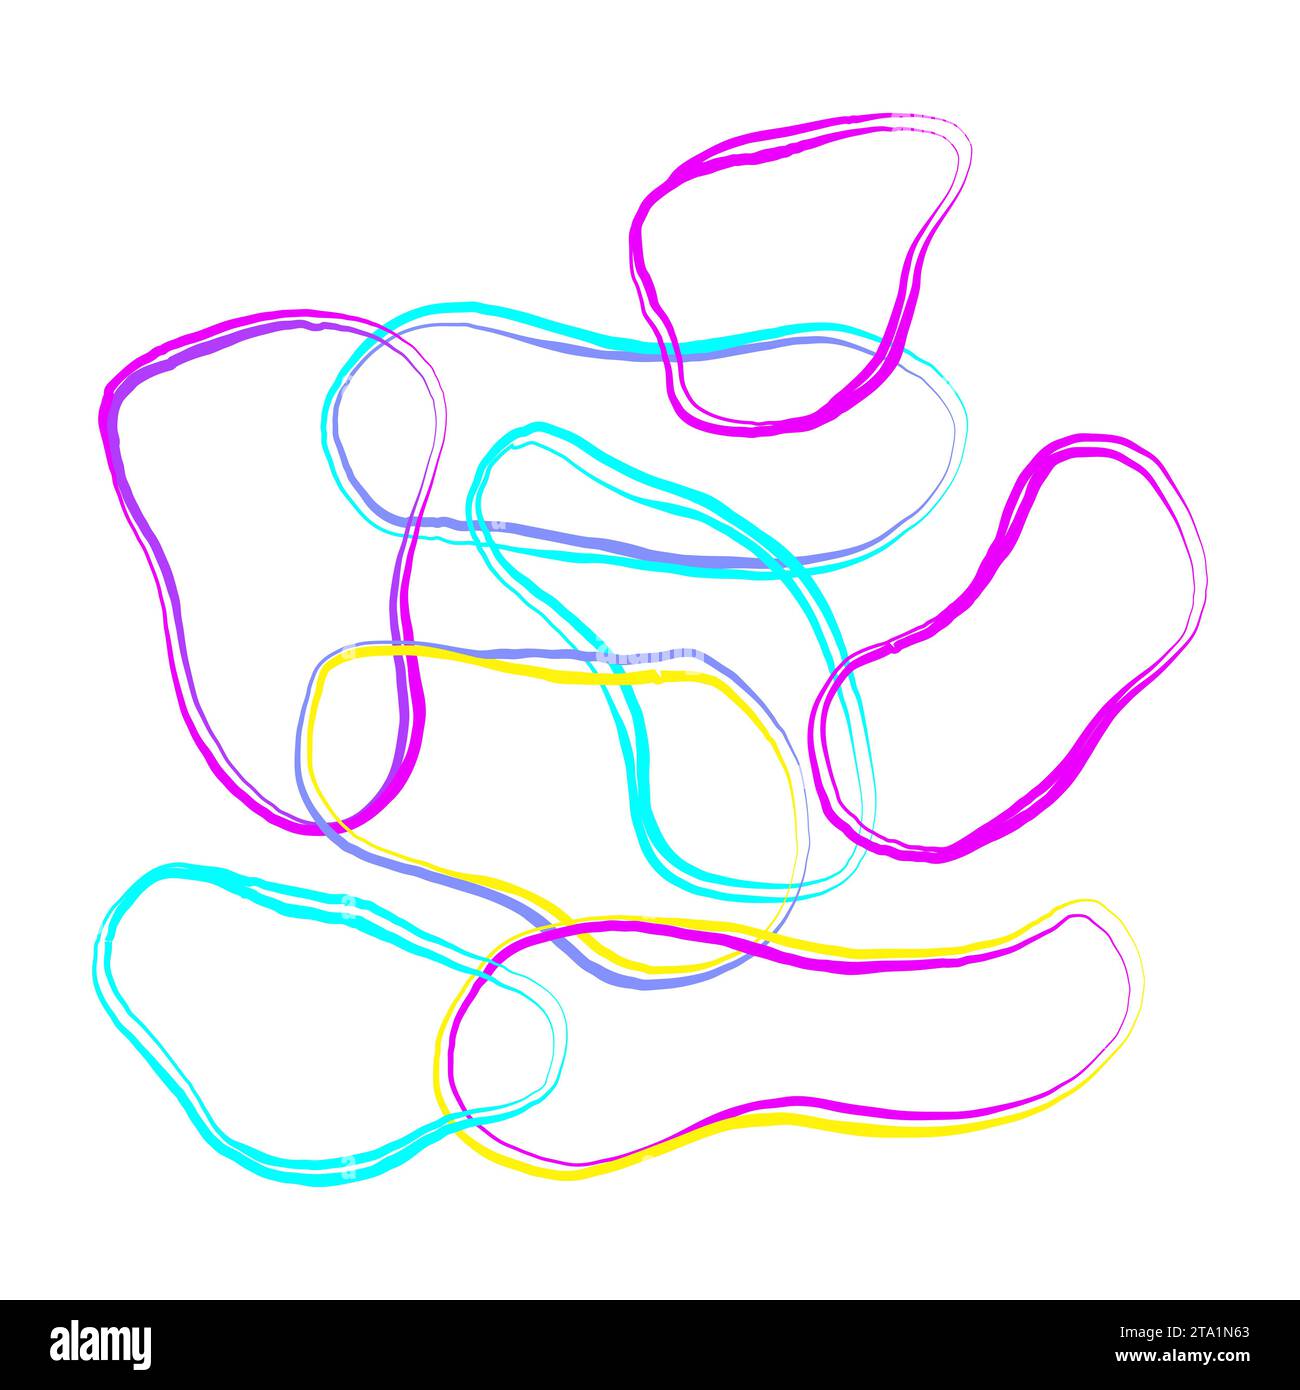 Poster di composizione vettoriale Doodle con colori al neon vivaci e saturi. disegnate a mano, modellate con forme organiche. Stampa moderna a spirale Illustrazione Vettoriale